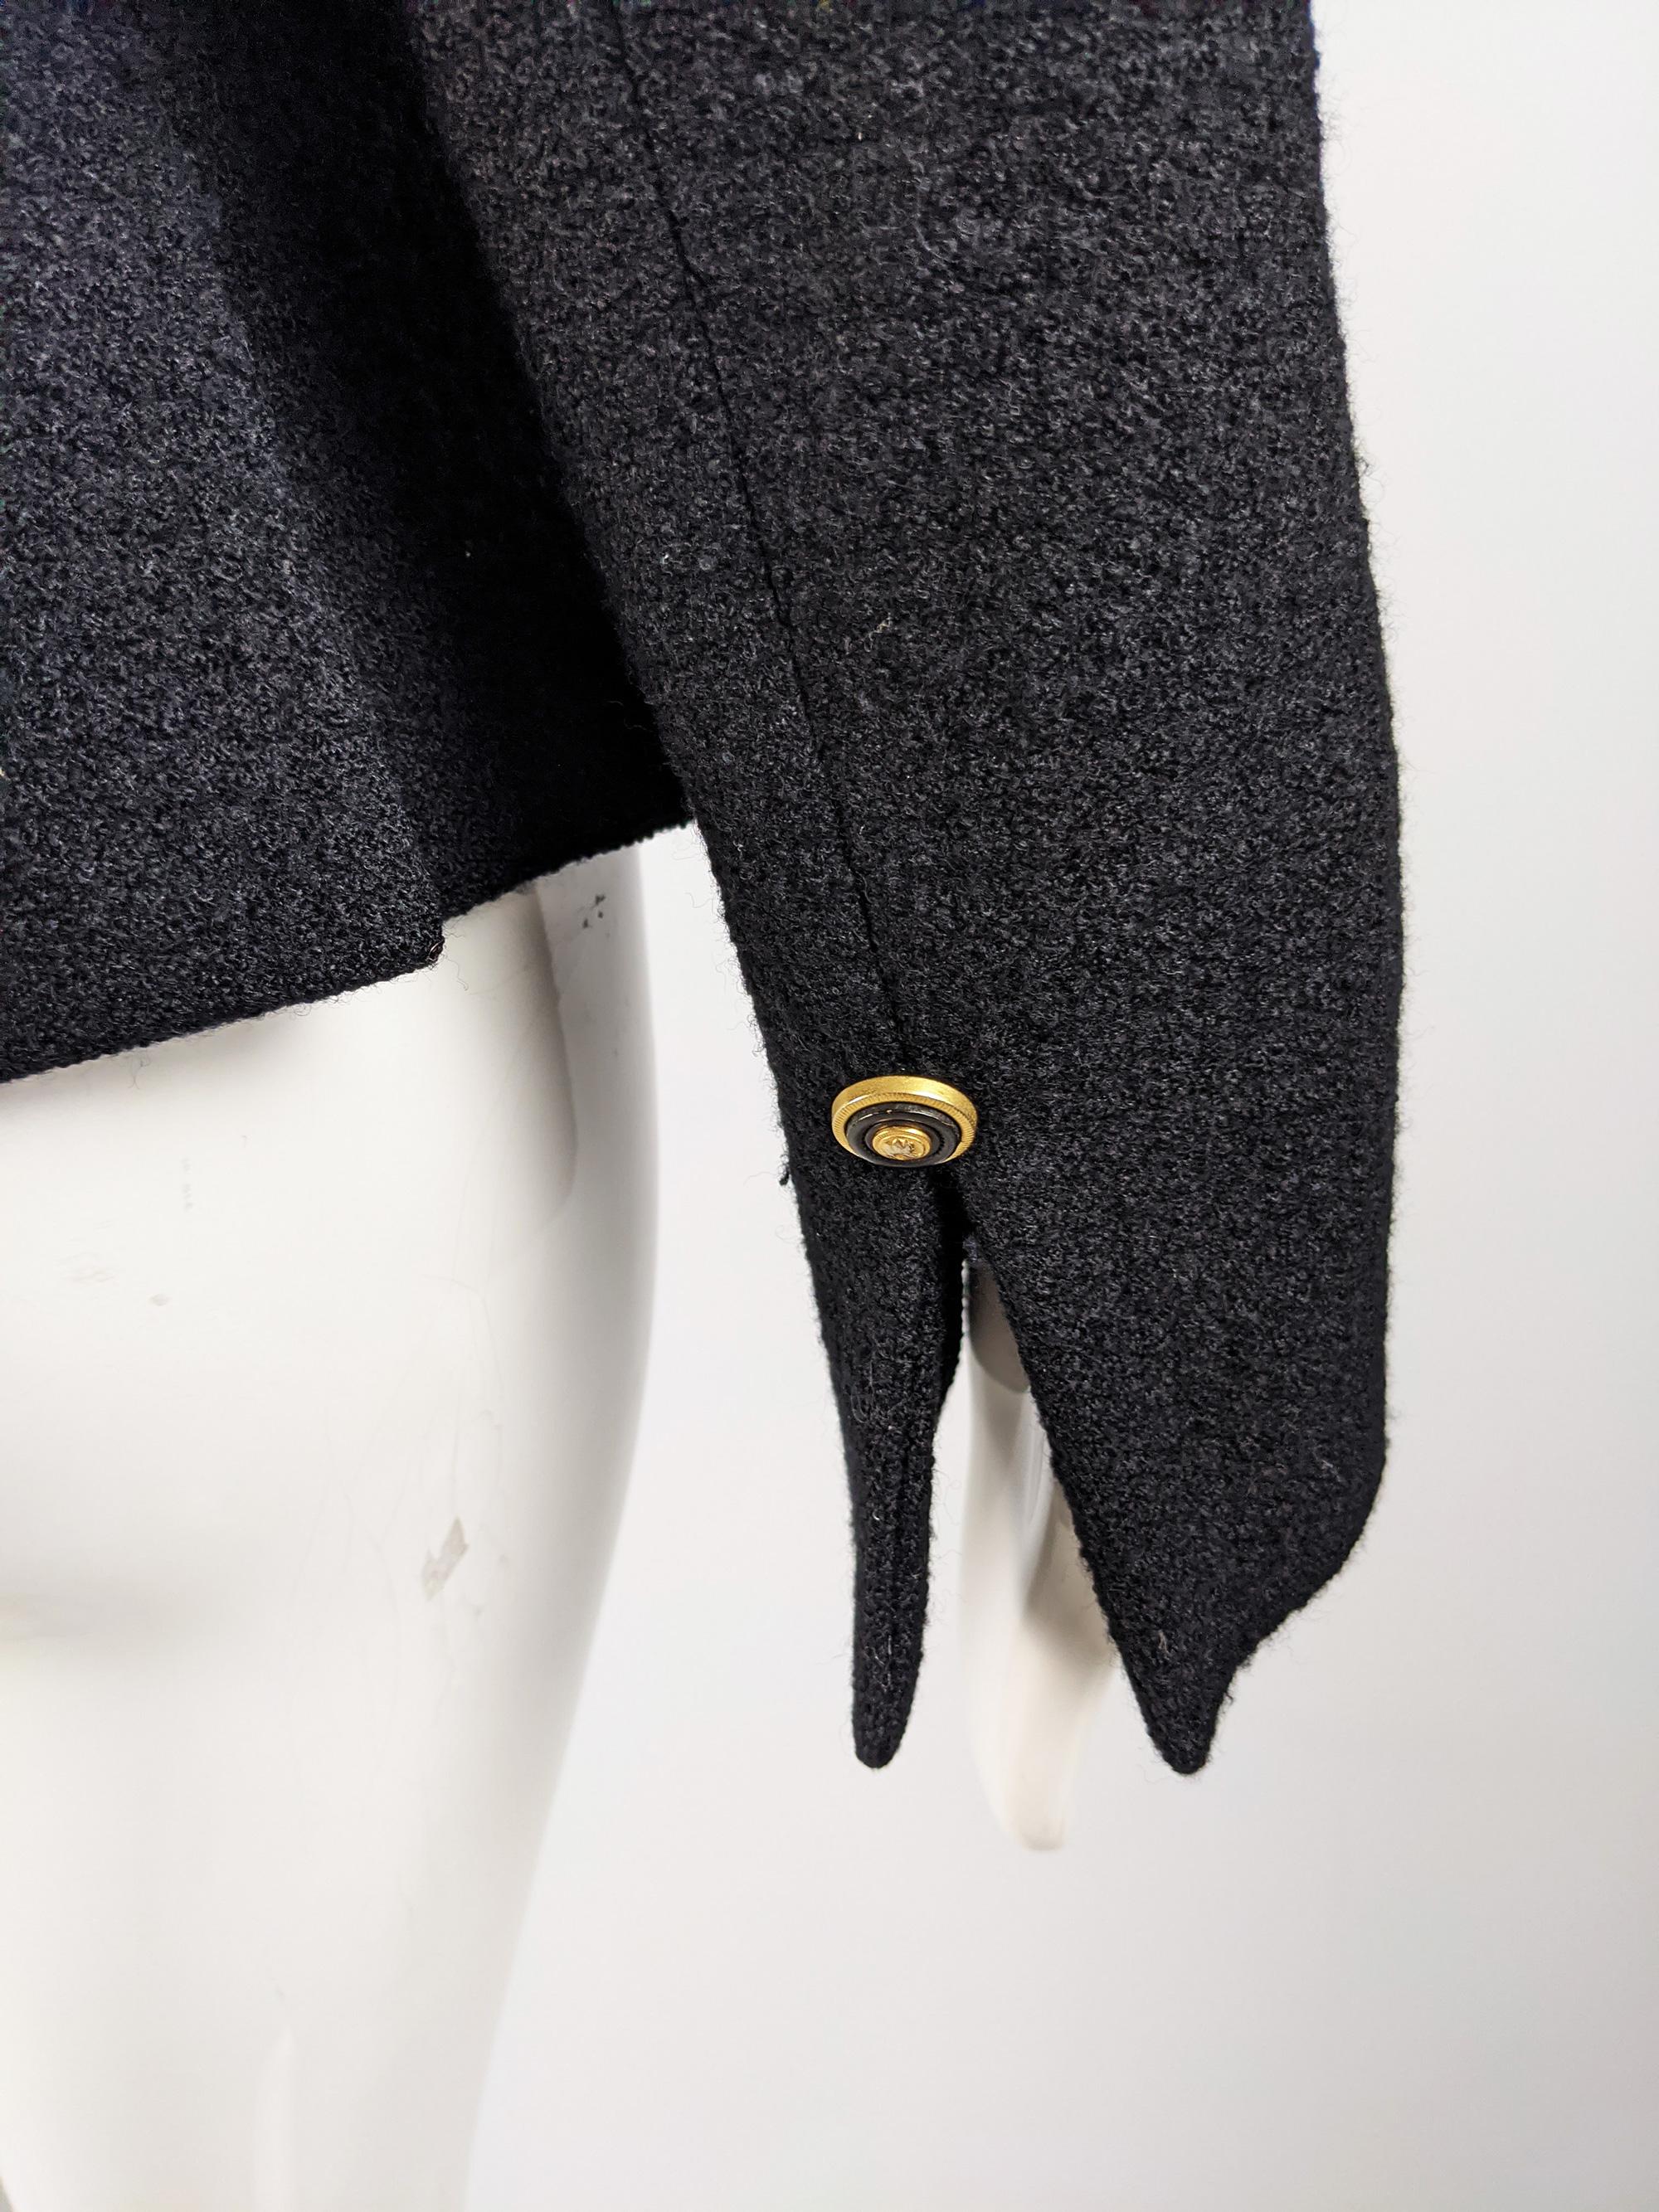 Gianni Versace Versus Vintage Black Wool Tweed Jacket 4